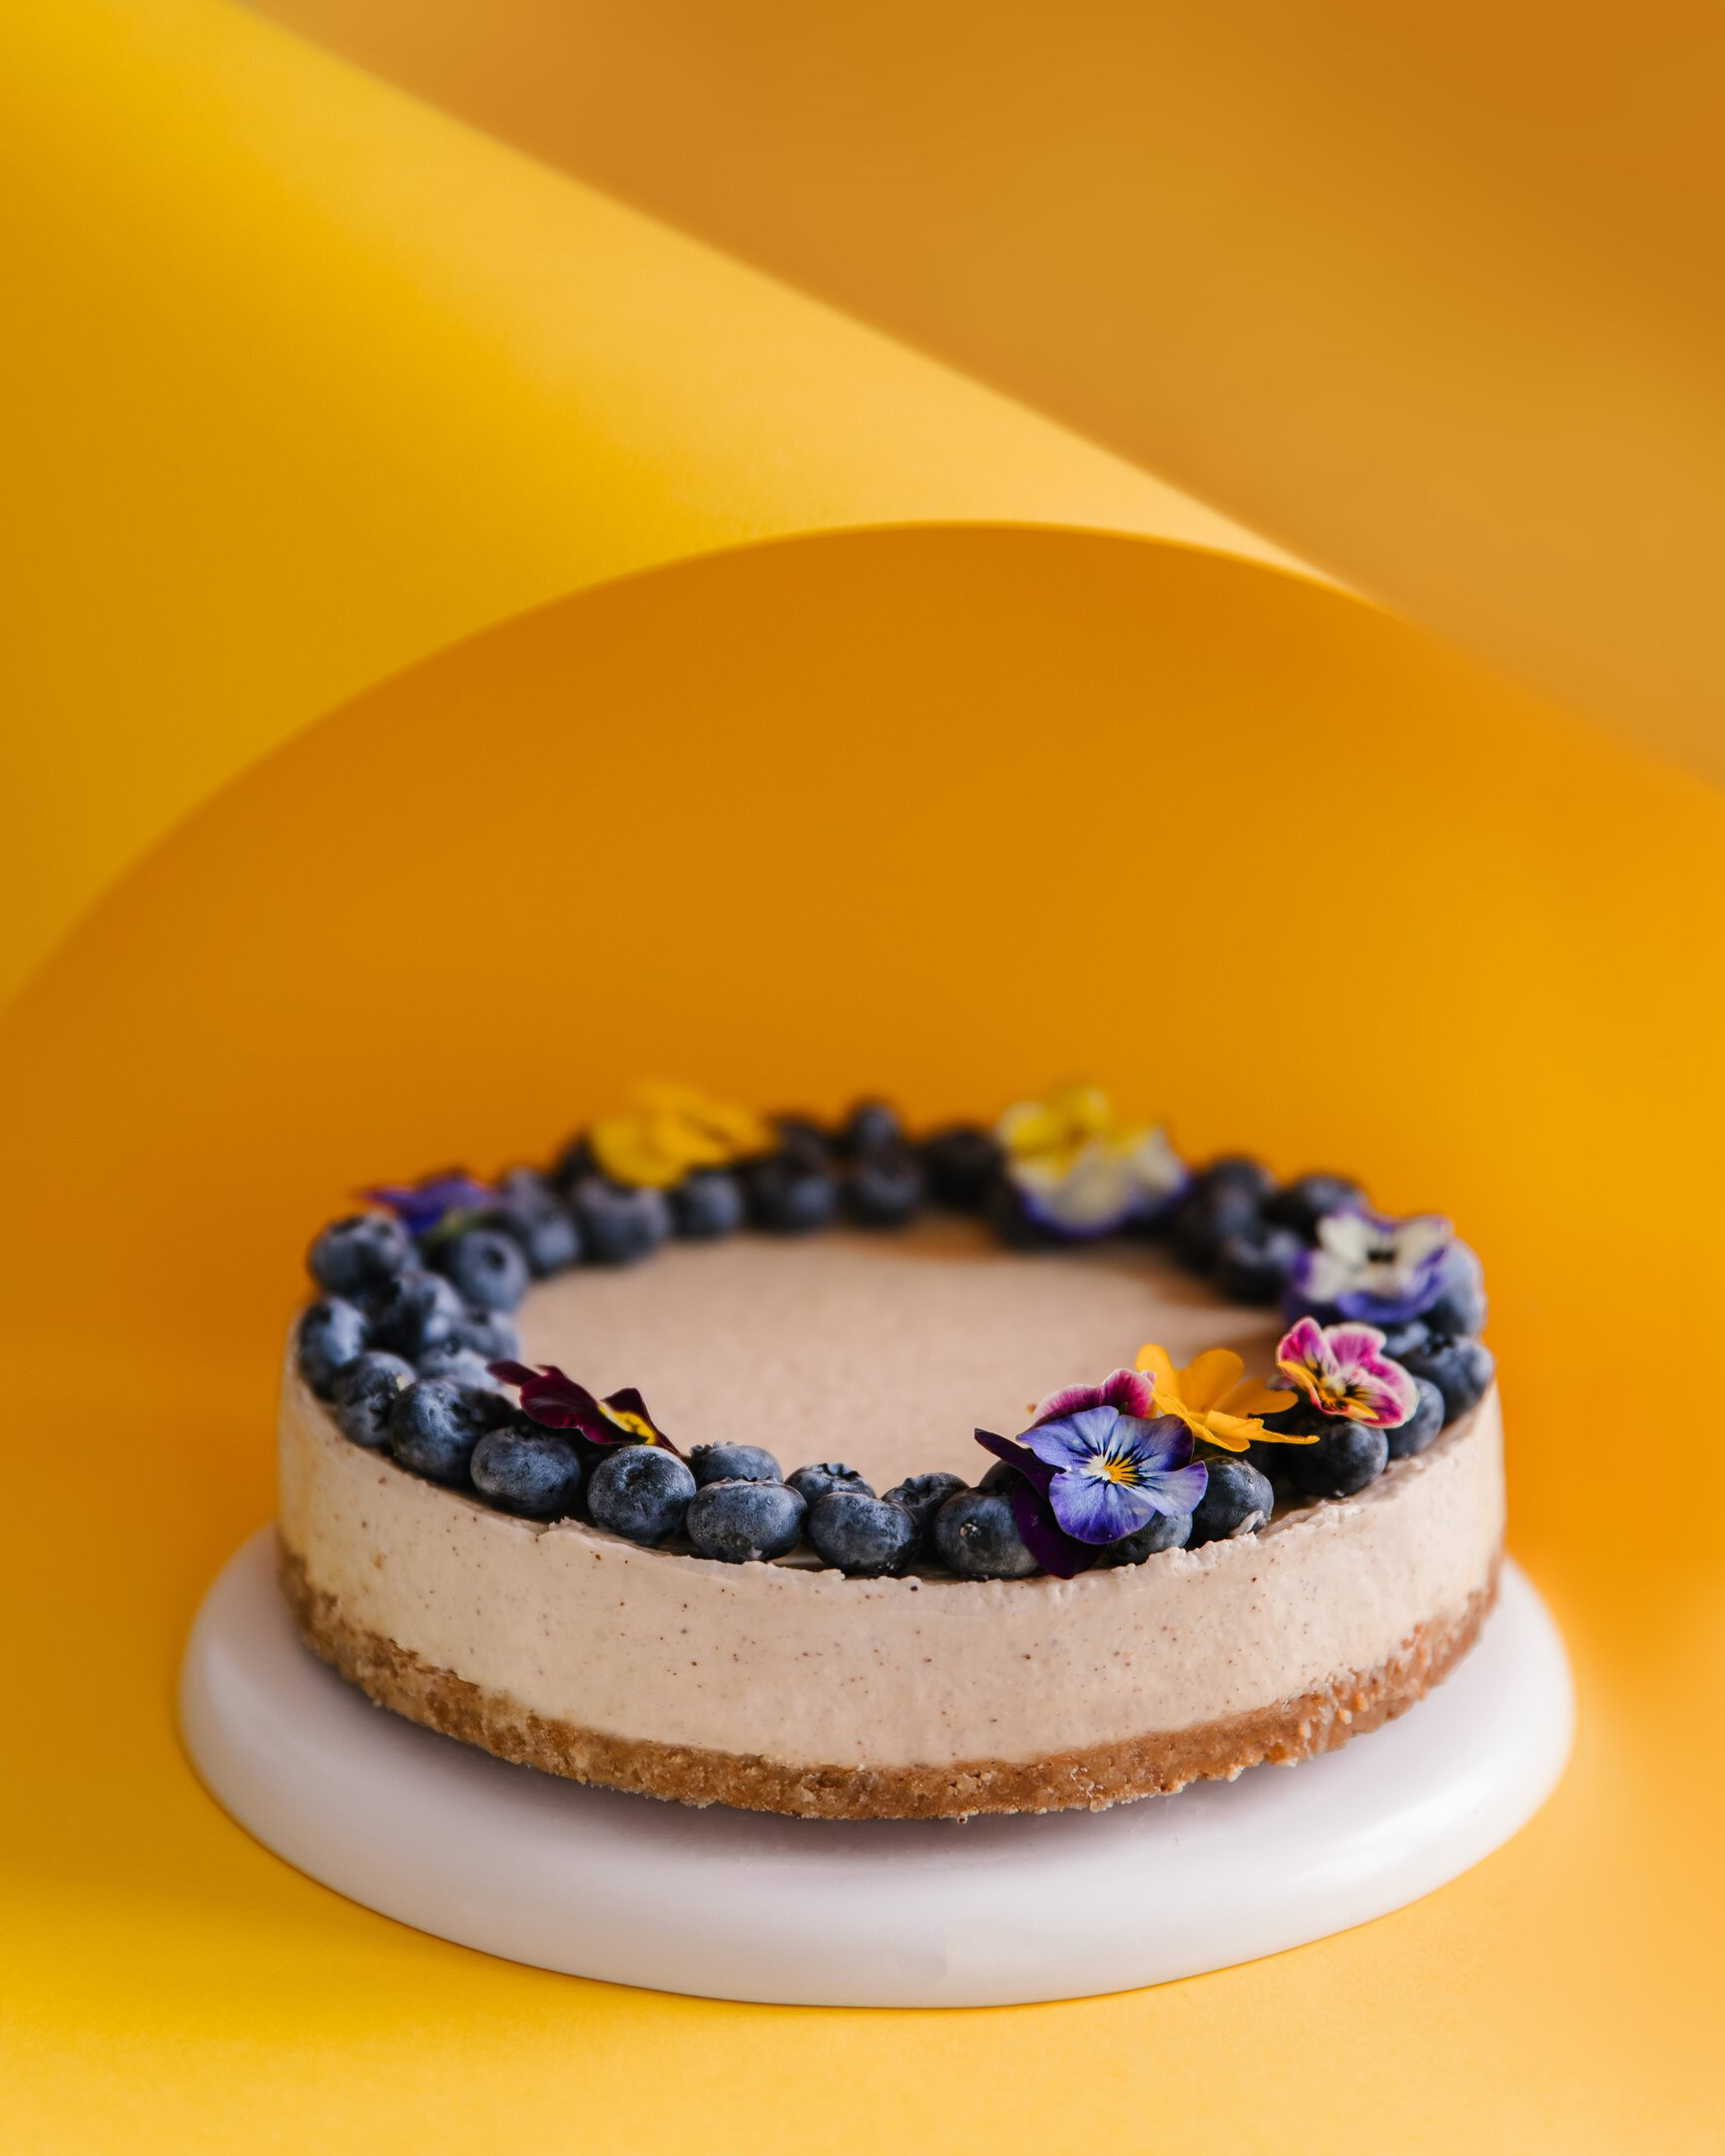 Кръгла торта с боровинки. Кръгла торта, покрита с боровинки и цветя върху постамент от бяла керамика в средата на снимката. Виждат се няколко слоя от тортата. Фонът е жълт и оранжев.